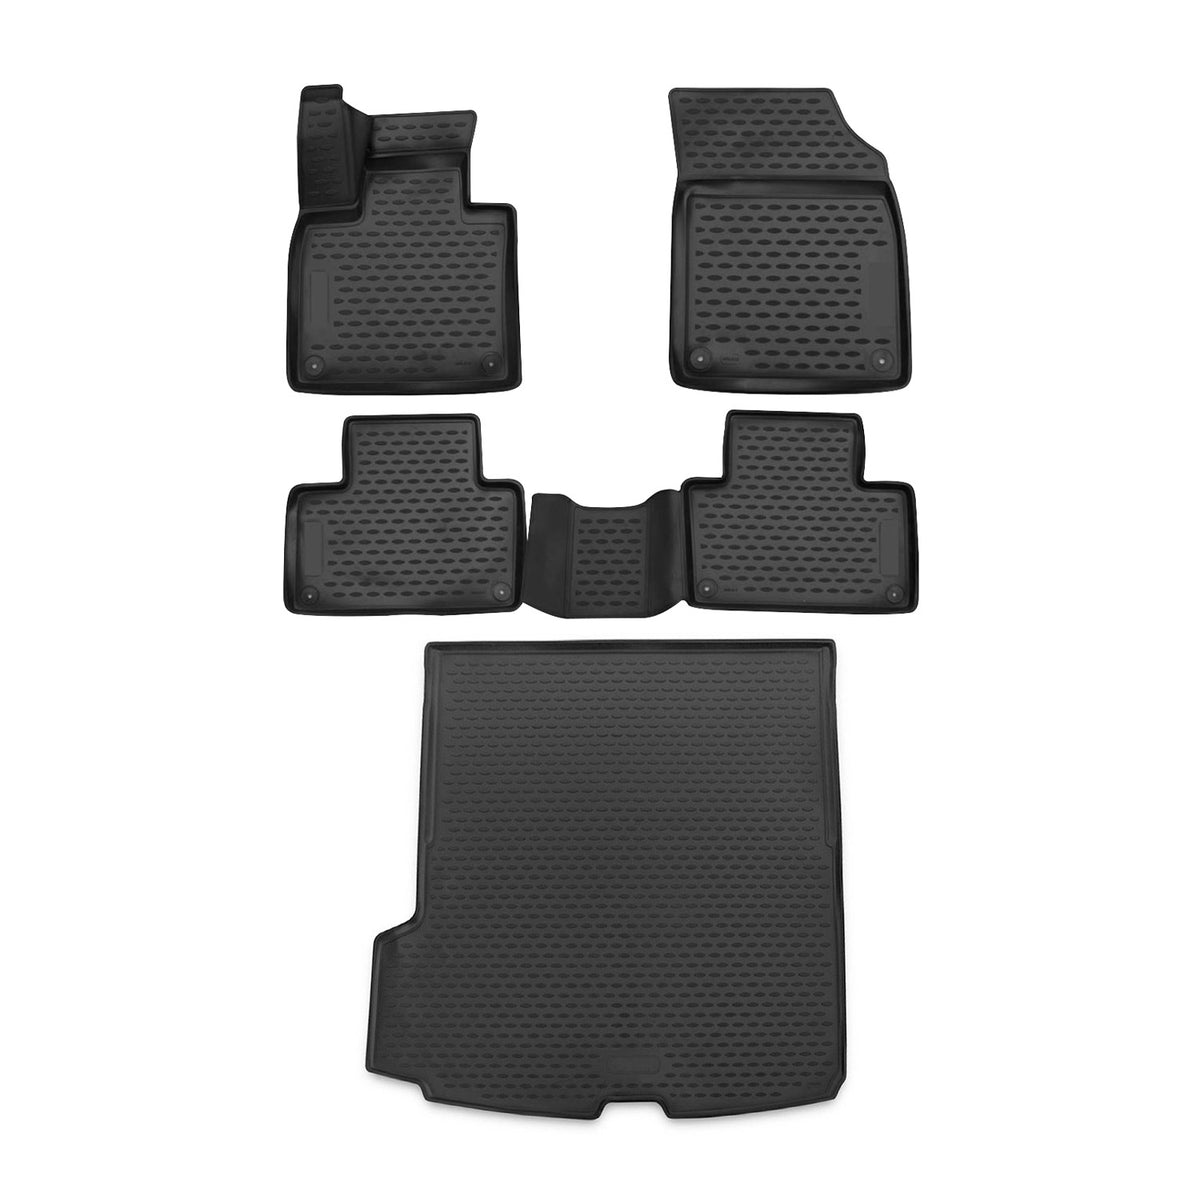 Fußmatten & Kofferraumwanne Set für Volvo XC90 2015-2018 Gummi TPE Schwarz 5x